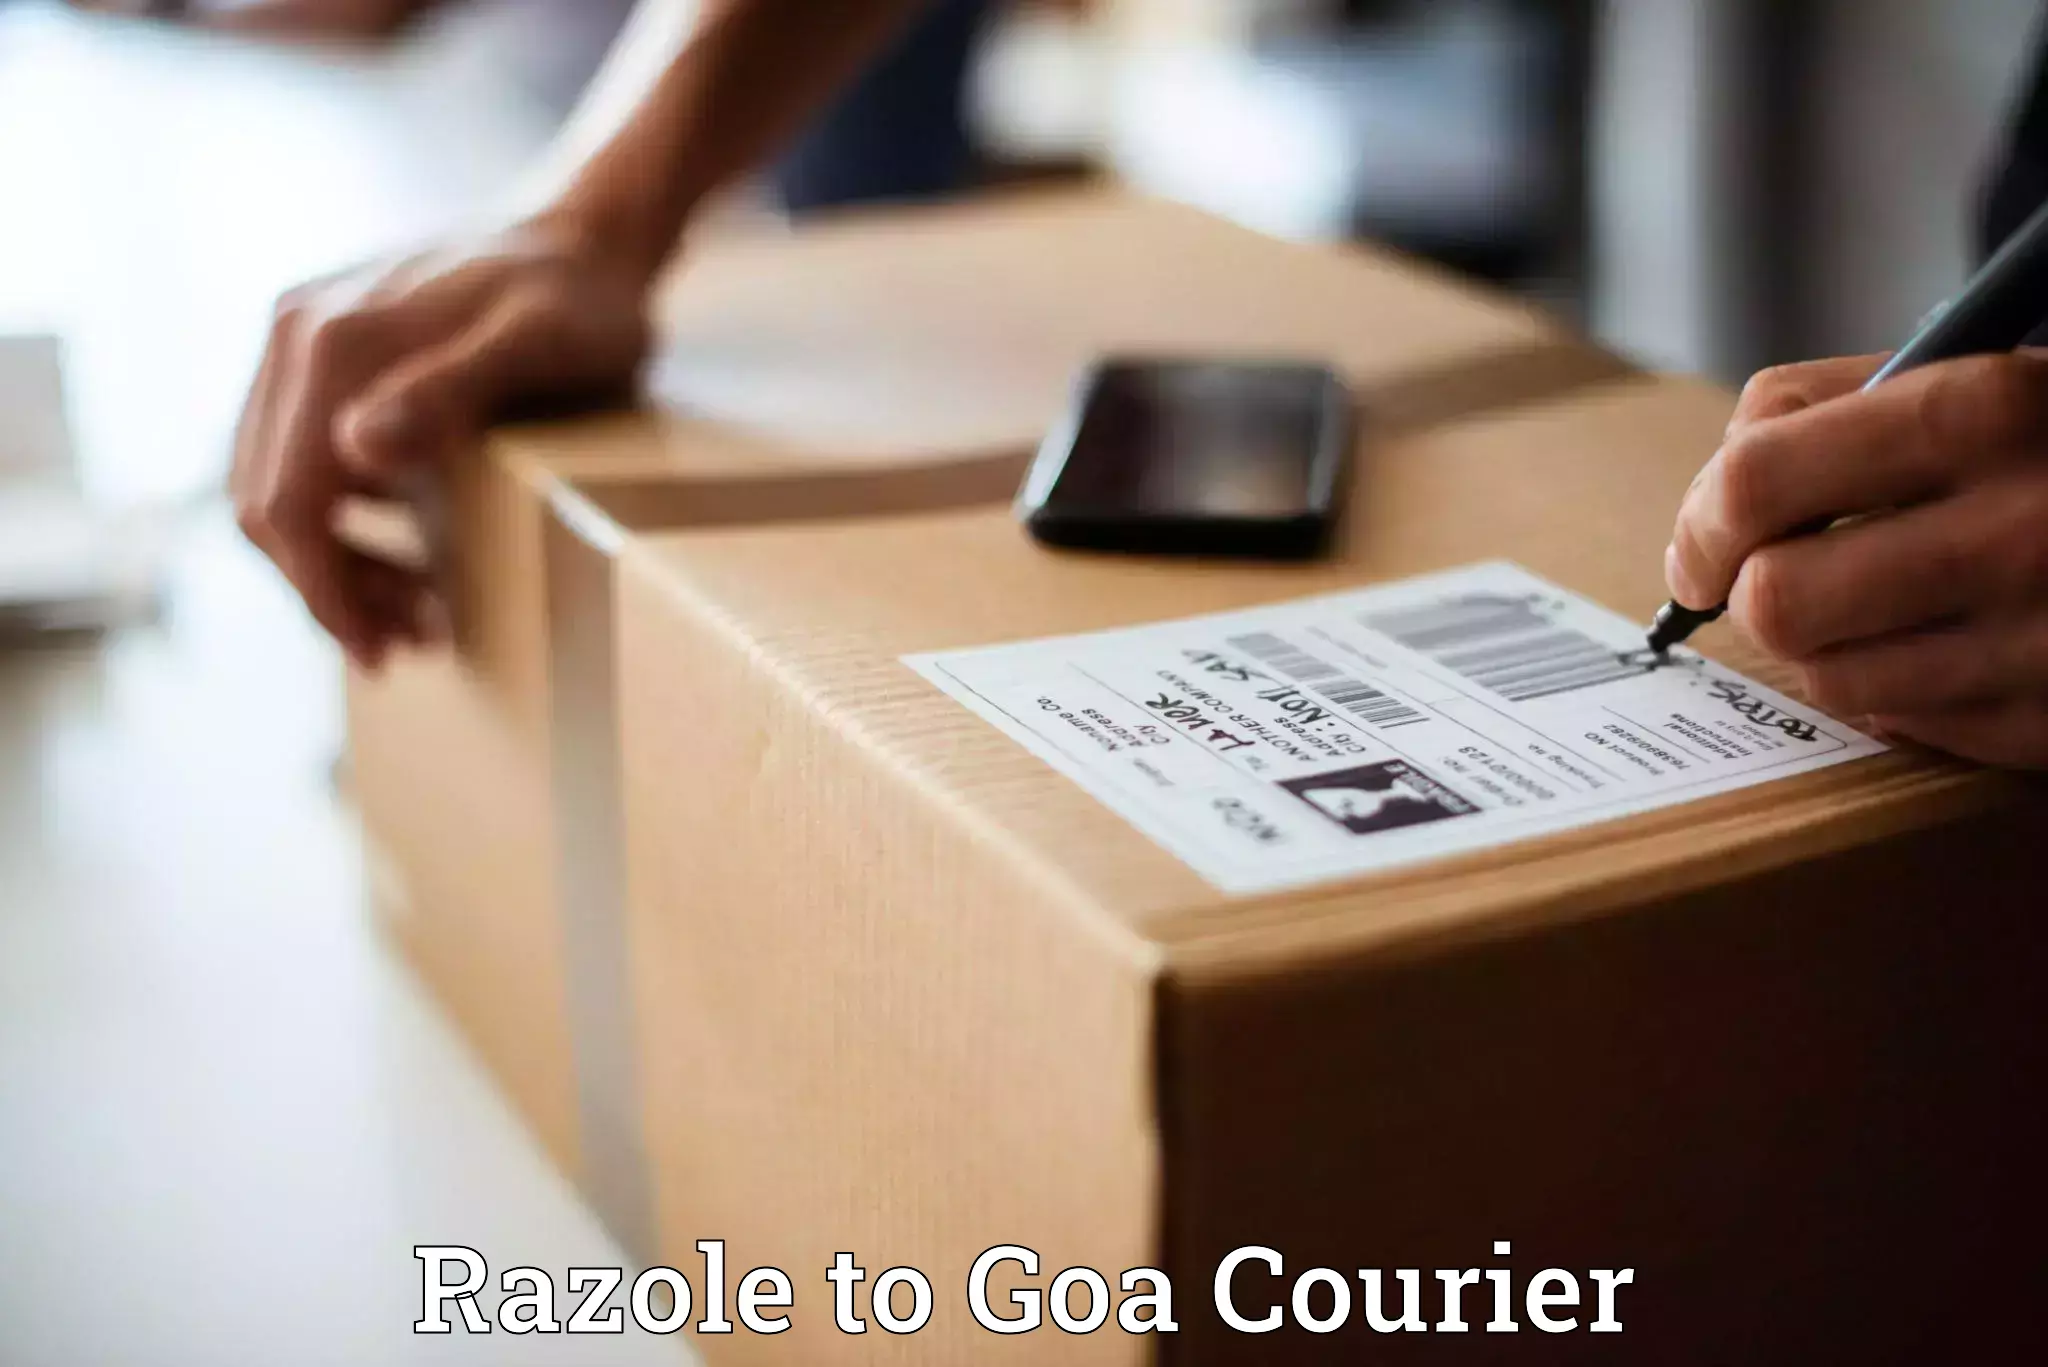 Efficient cargo handling in Razole to Goa